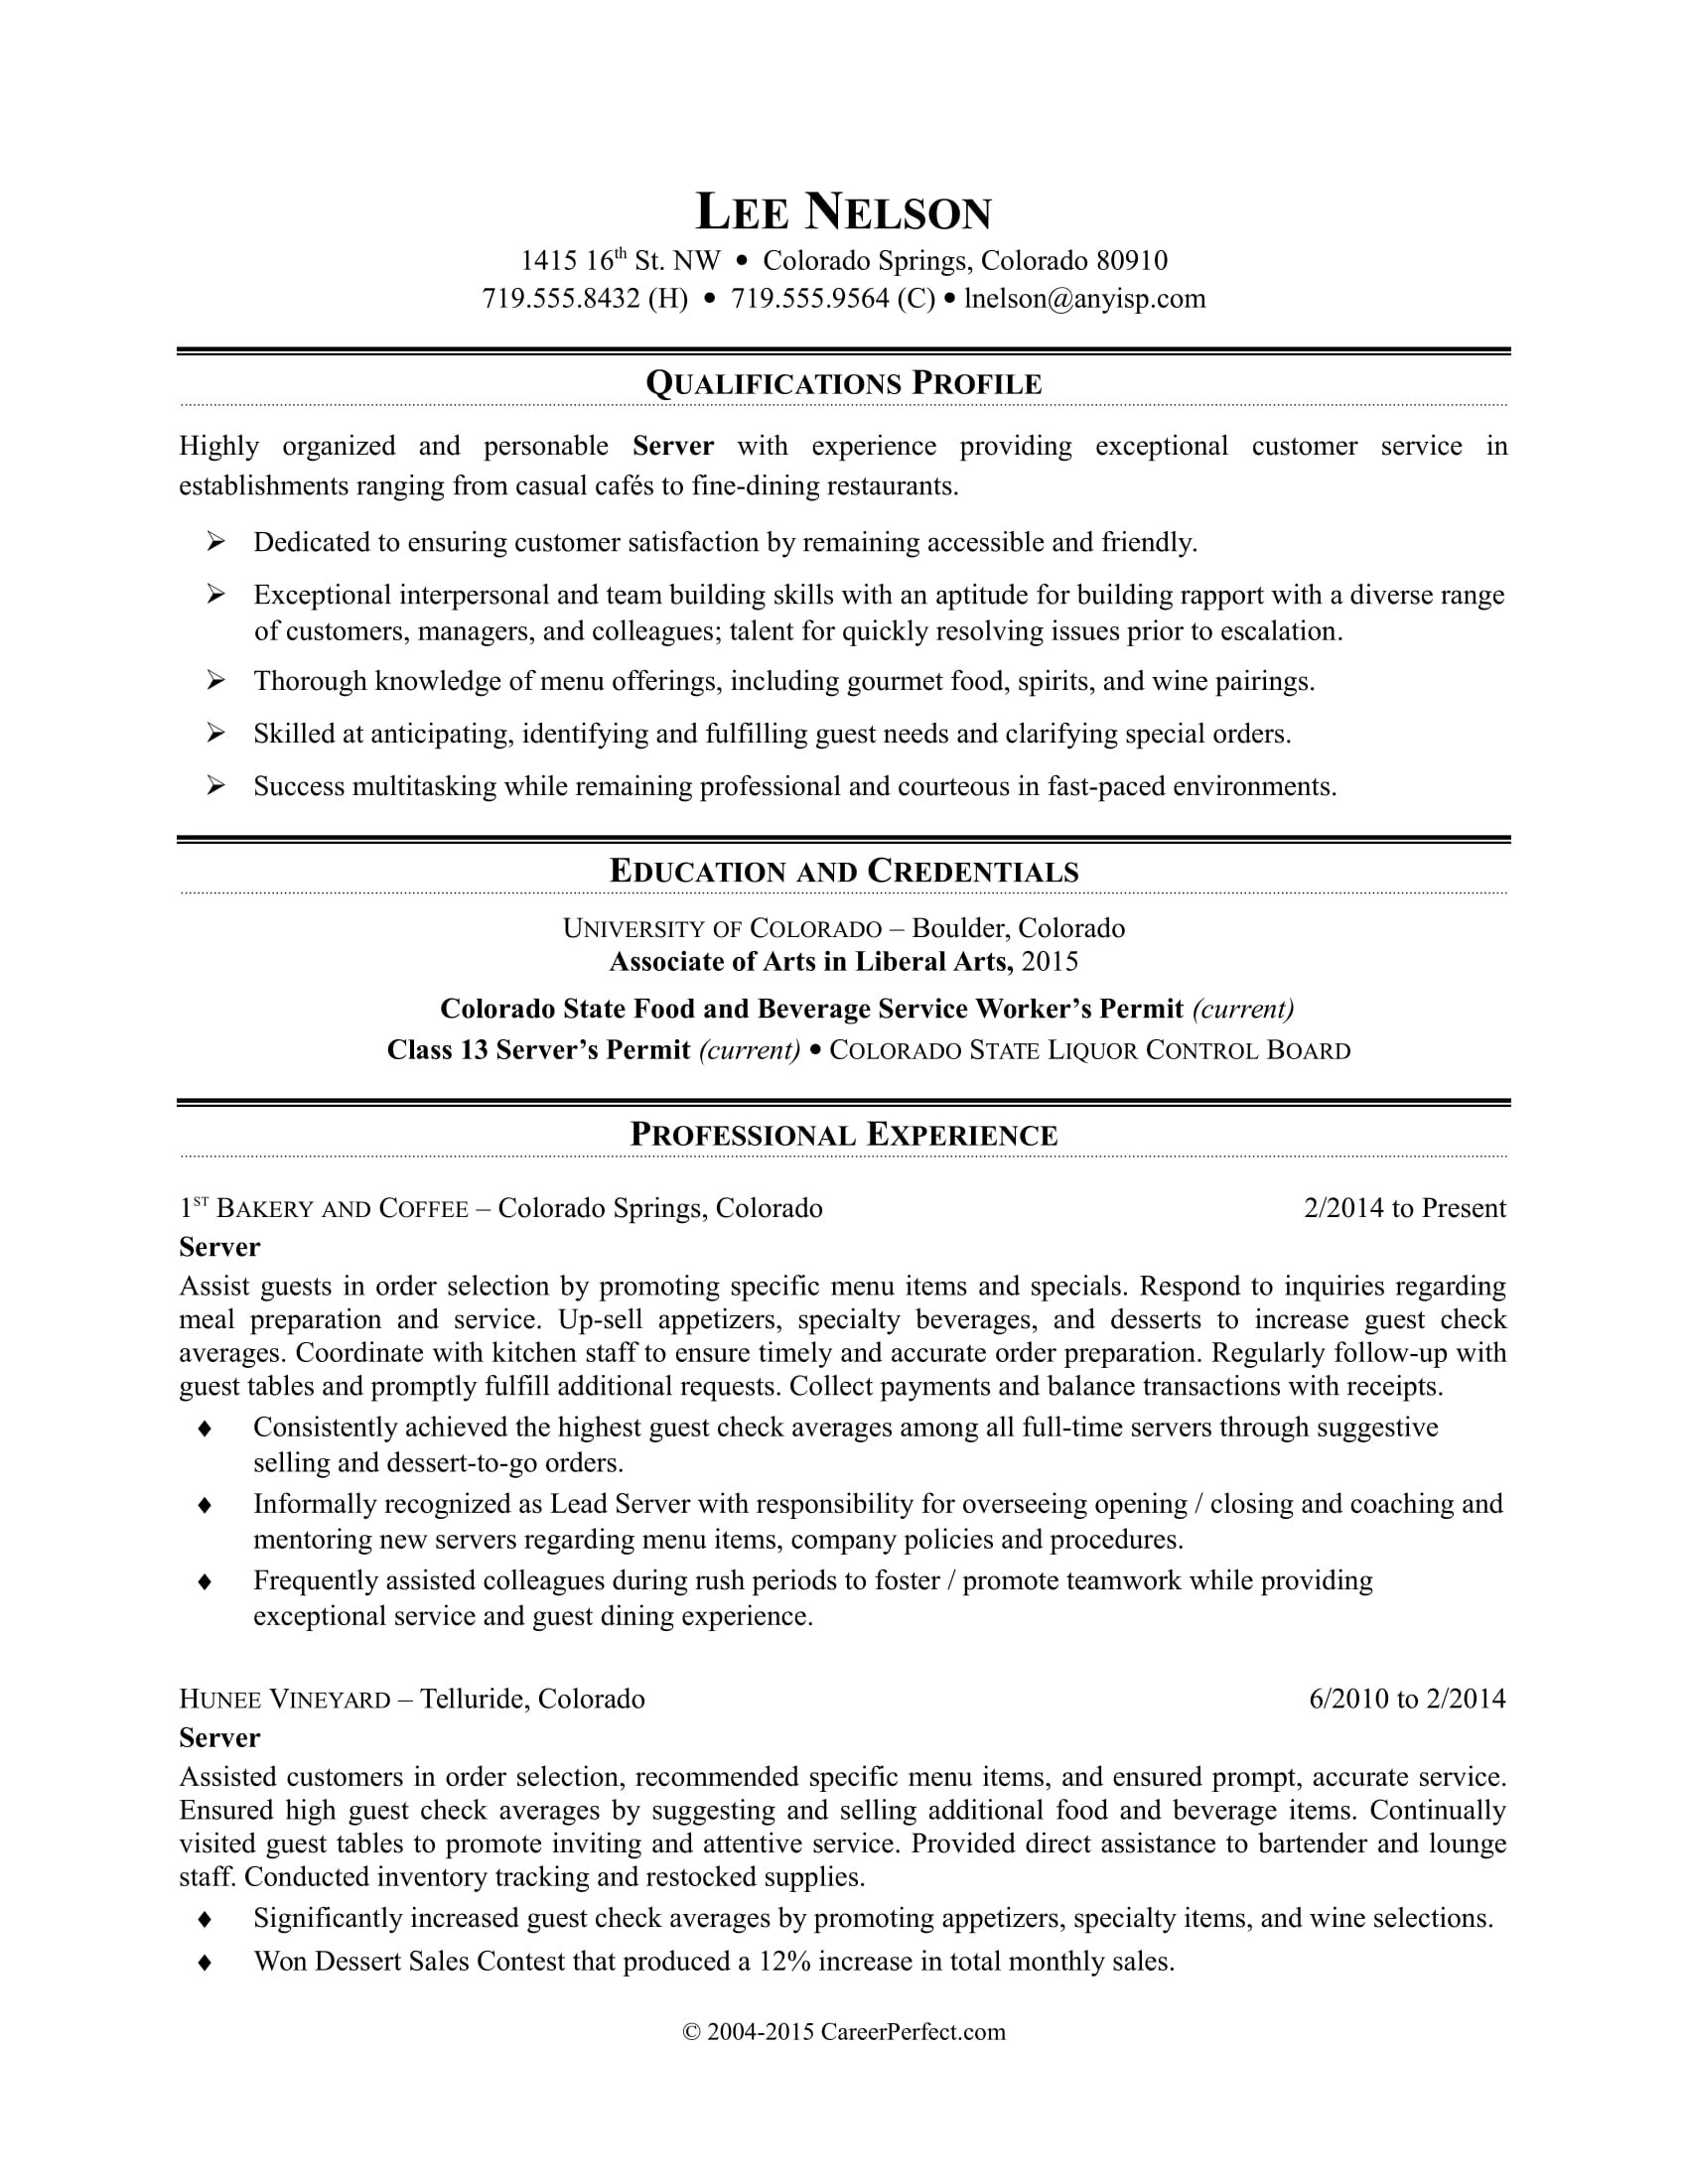 Sample Of Resume for Restaurant Server Restaurant Server Resume Sample Monster.com